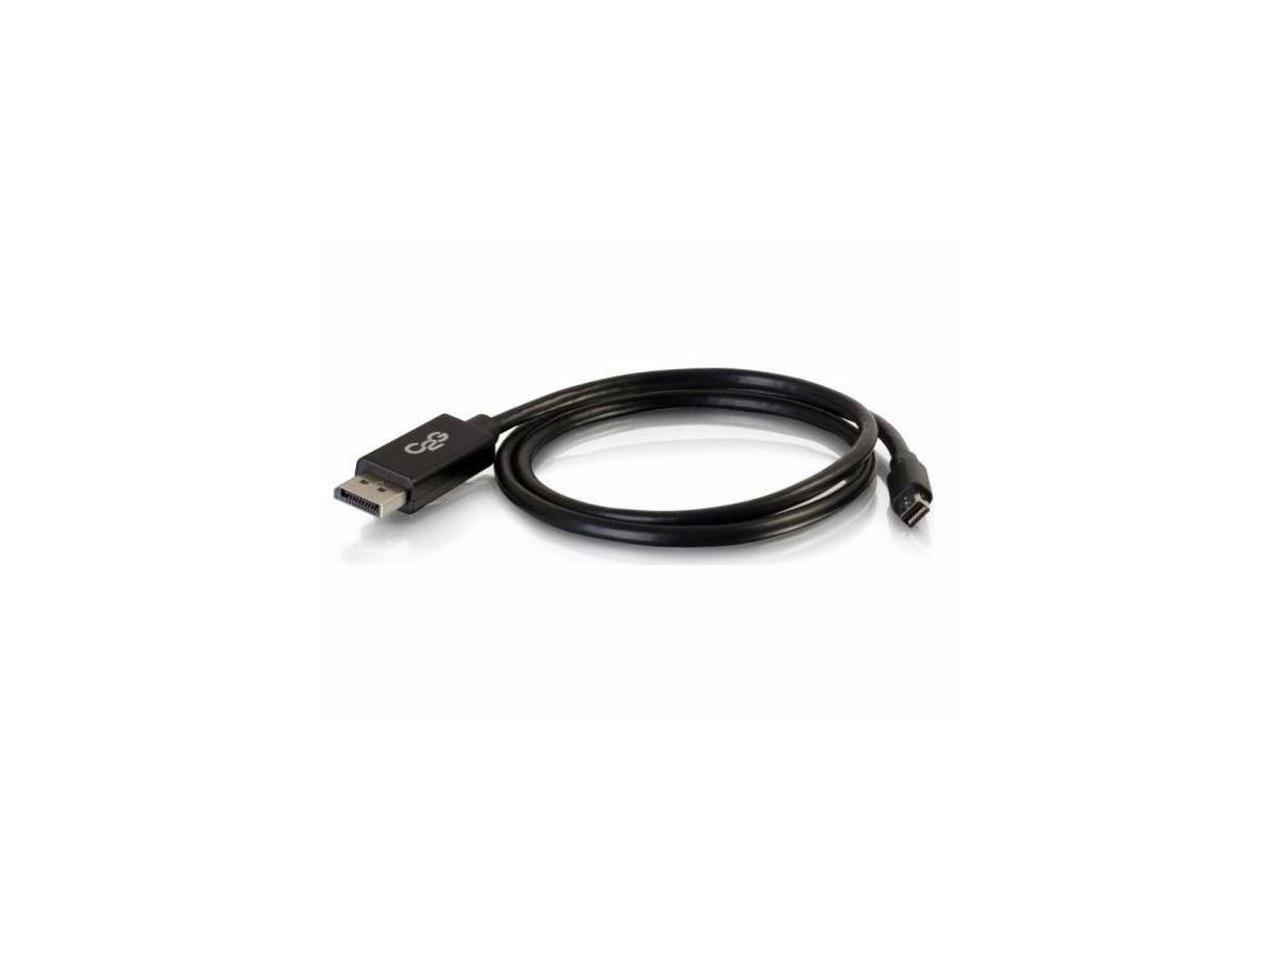 6ft MiniDisplayPort to DisplayPort Cable - 54301